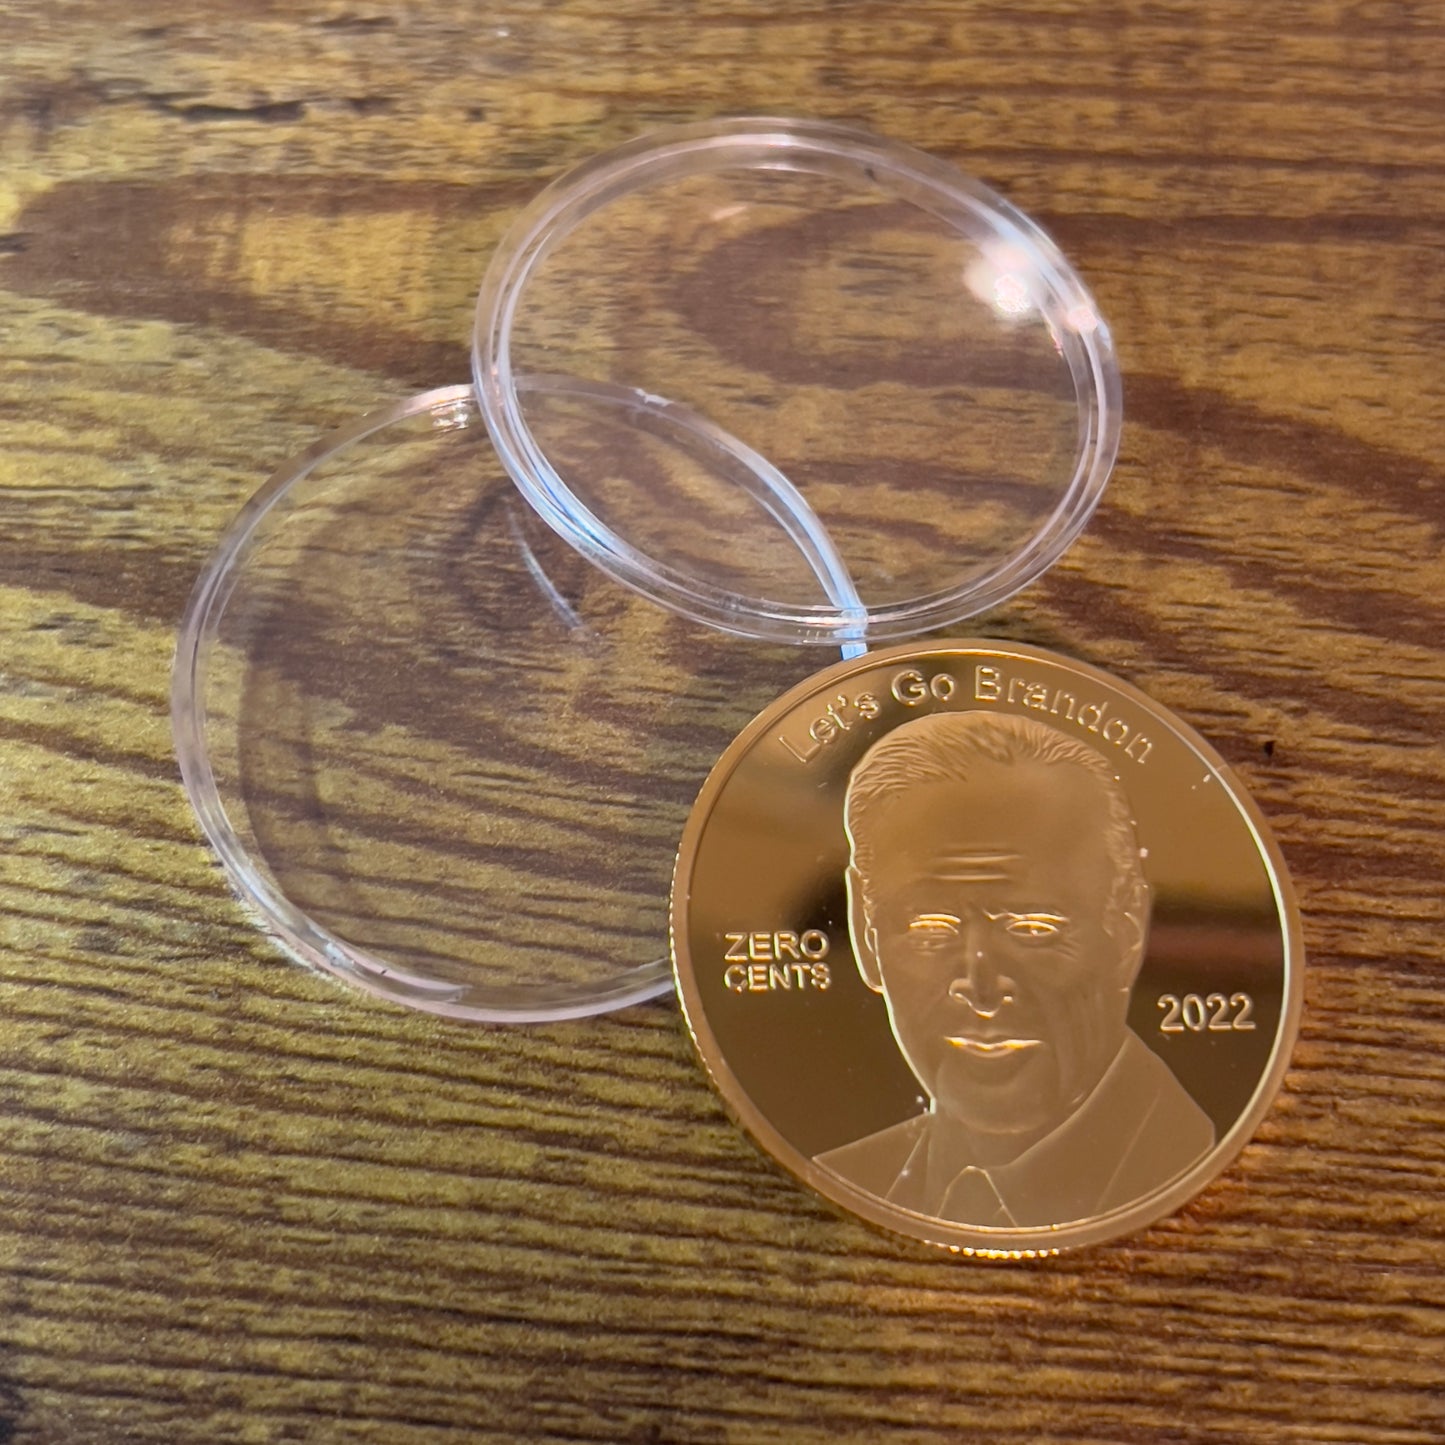 Joe Biden "Zero Cents" Coins